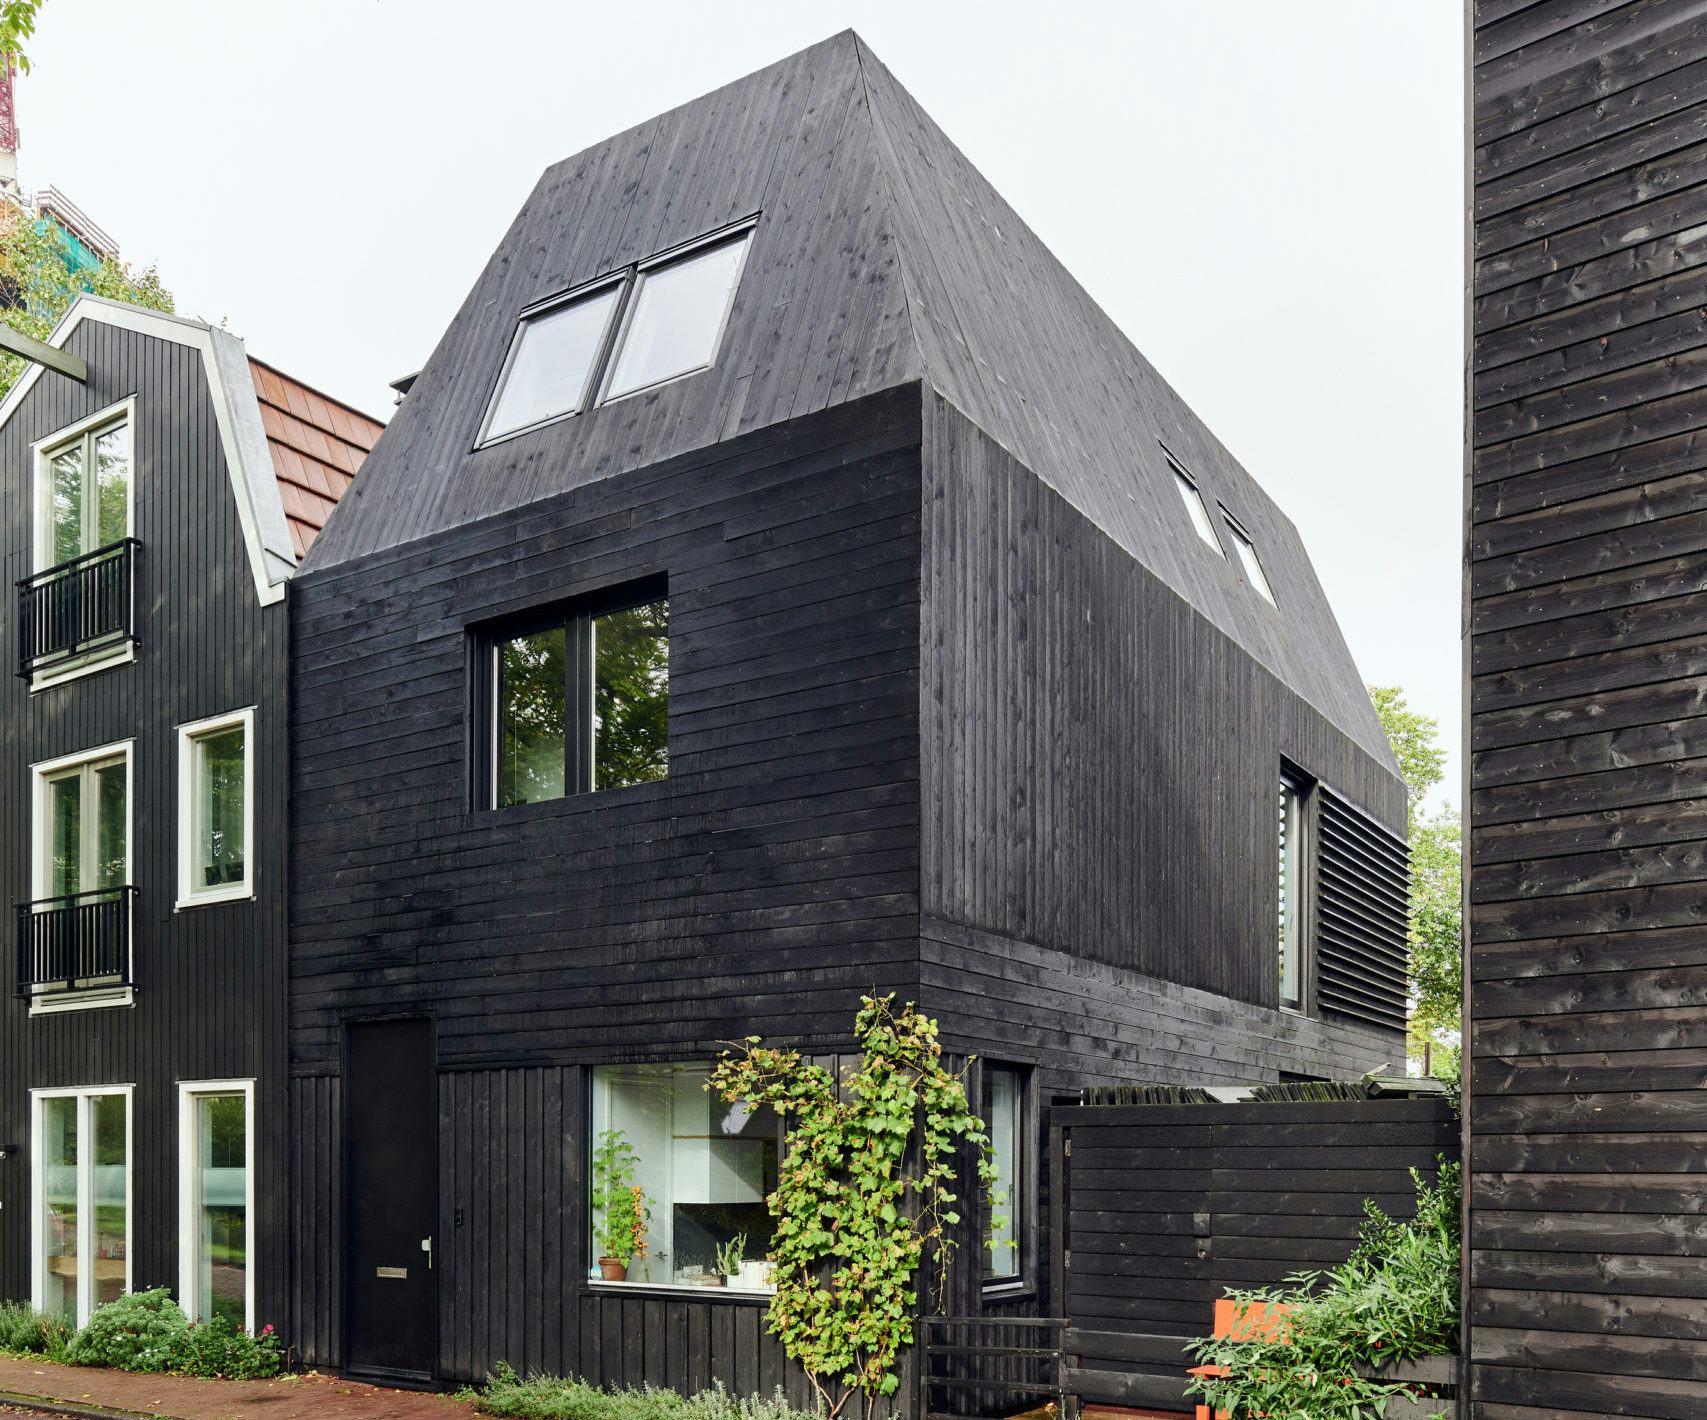 Nieuwbouwhuis Buiksloterweg Amsterdam concept en ontwerp door studio RIANKNOP. Beeld Phenster - Mark Kuipers